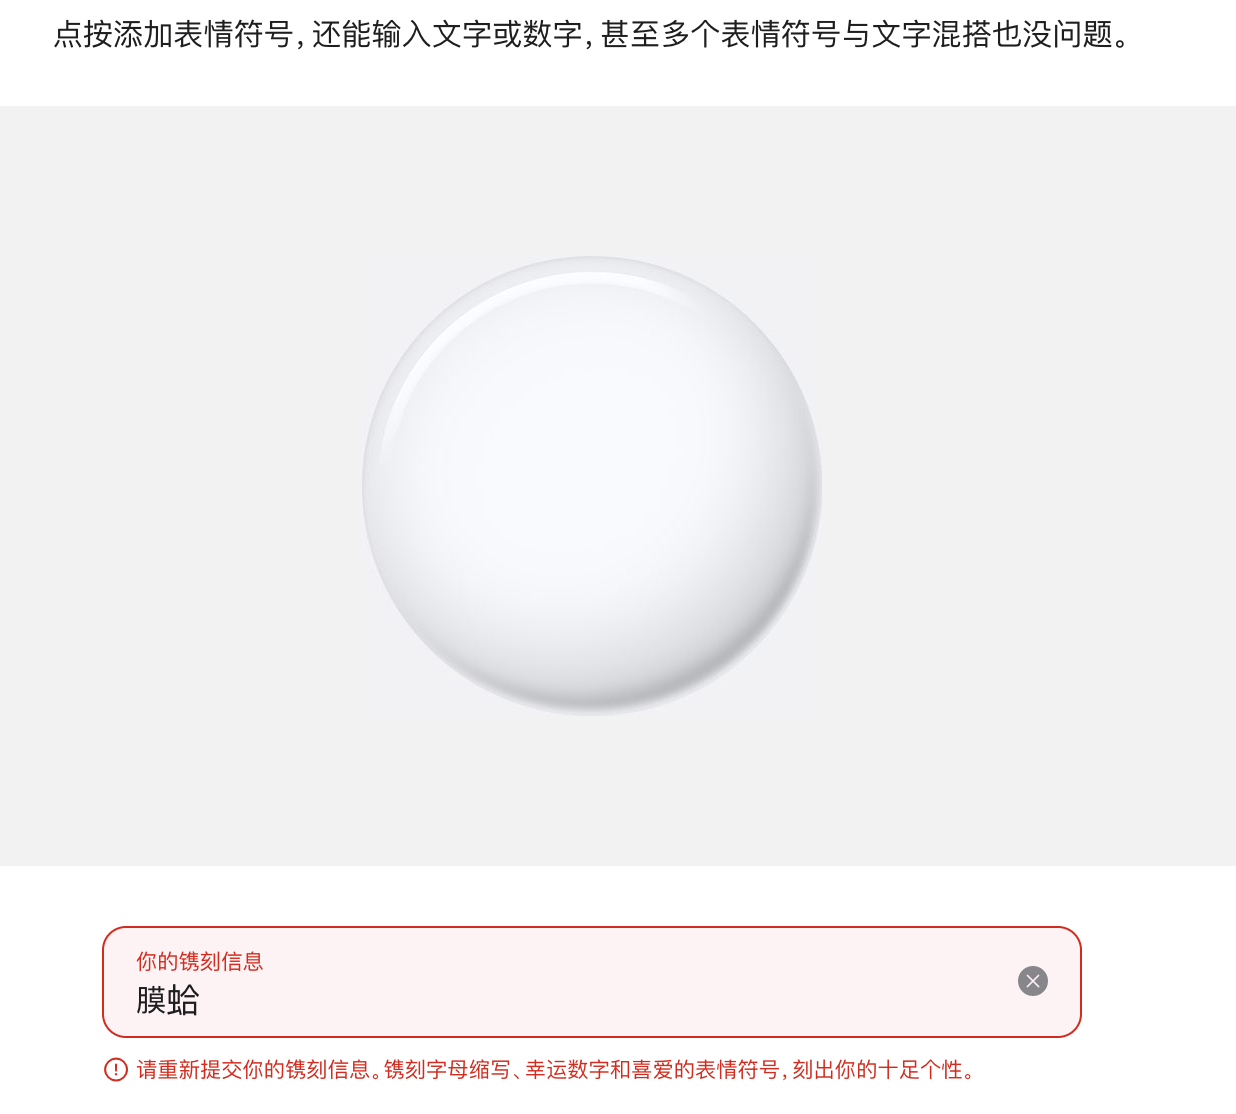 蘋果防丟神器AIRTAG中國版：不得鐫刻敏感詞